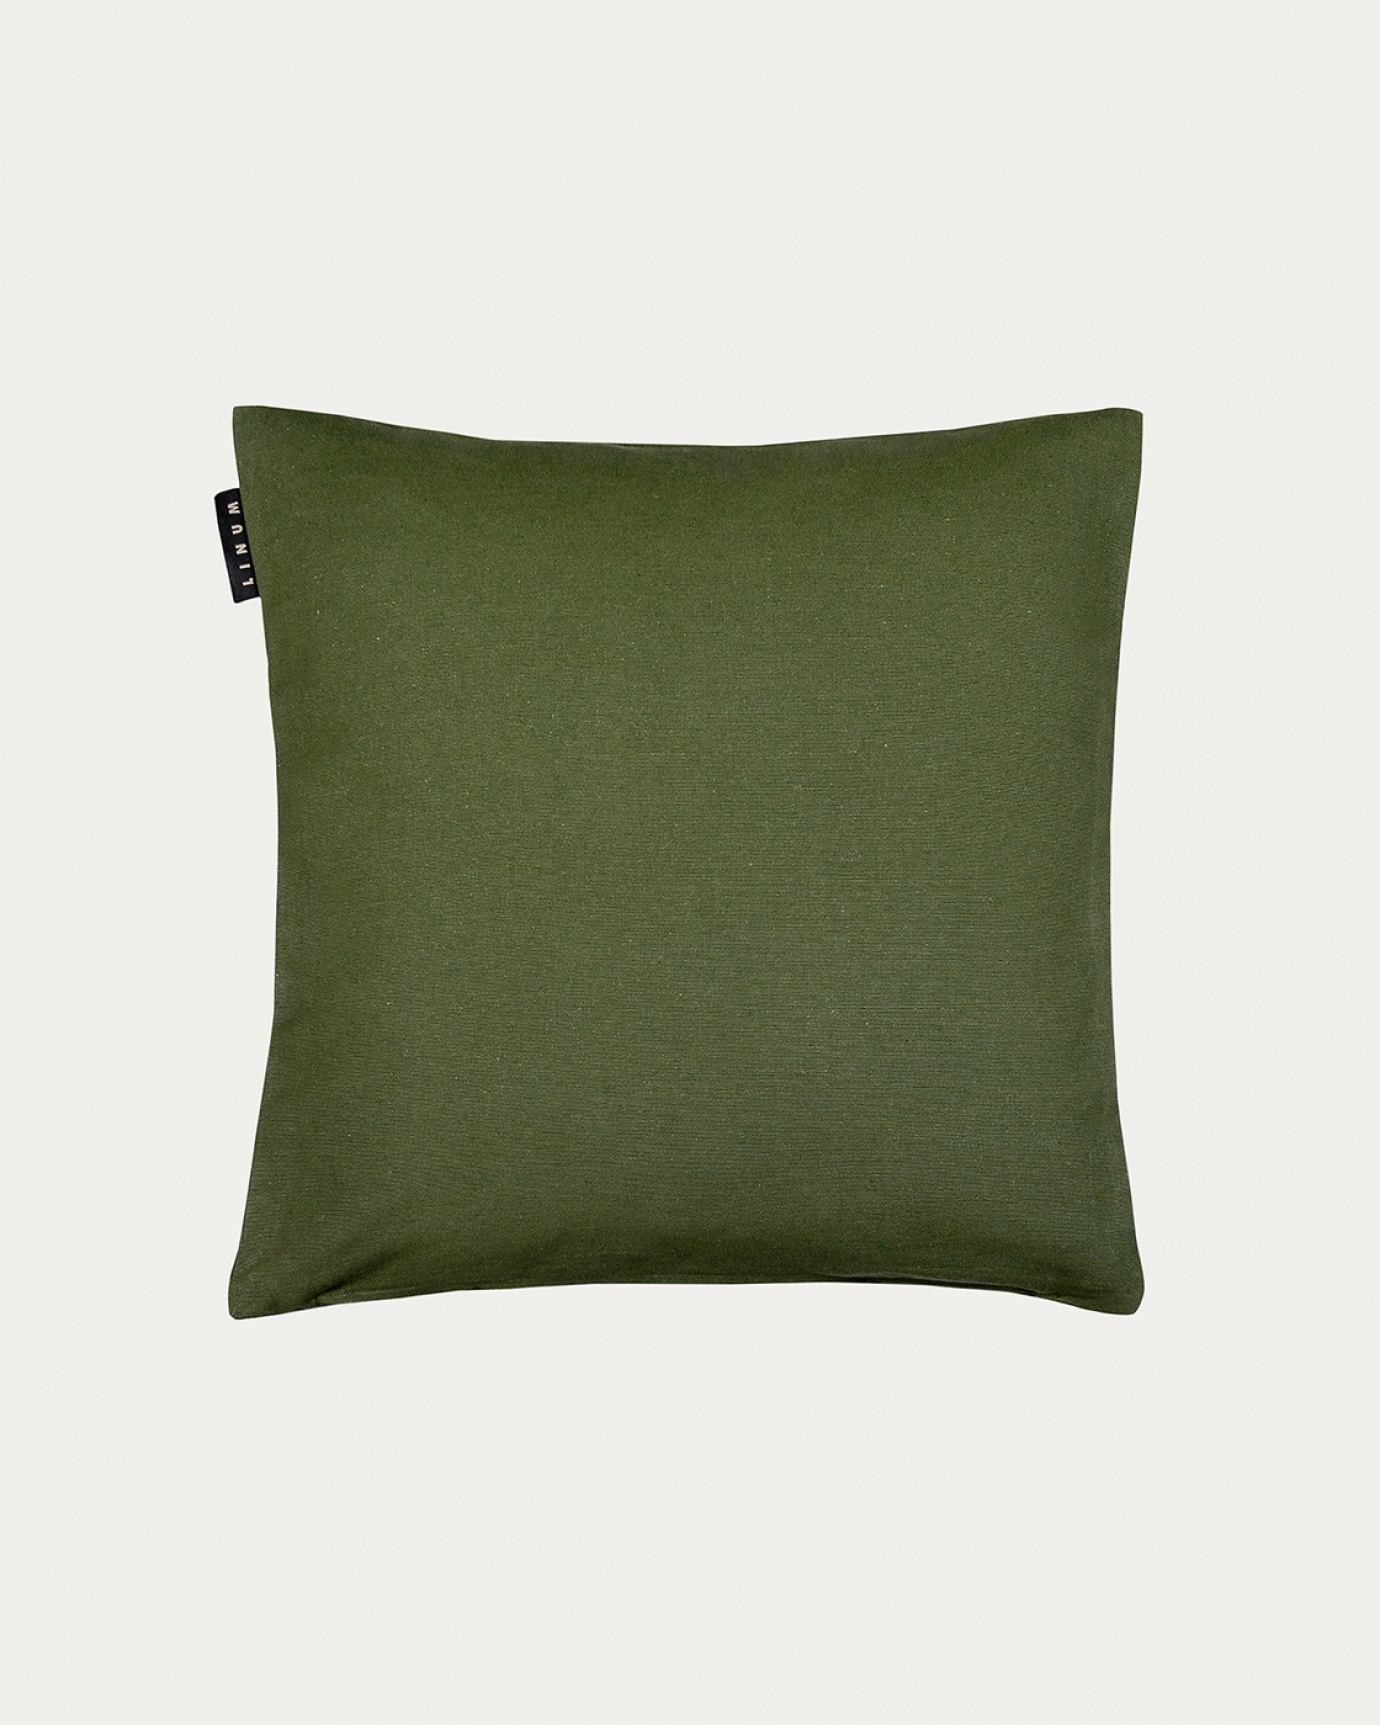 Produktbild dunkles olivgrün ANNABELL Kissenhülle aus weicher Baumwolle von LINUM DESIGN. Größe 40x40 cm.